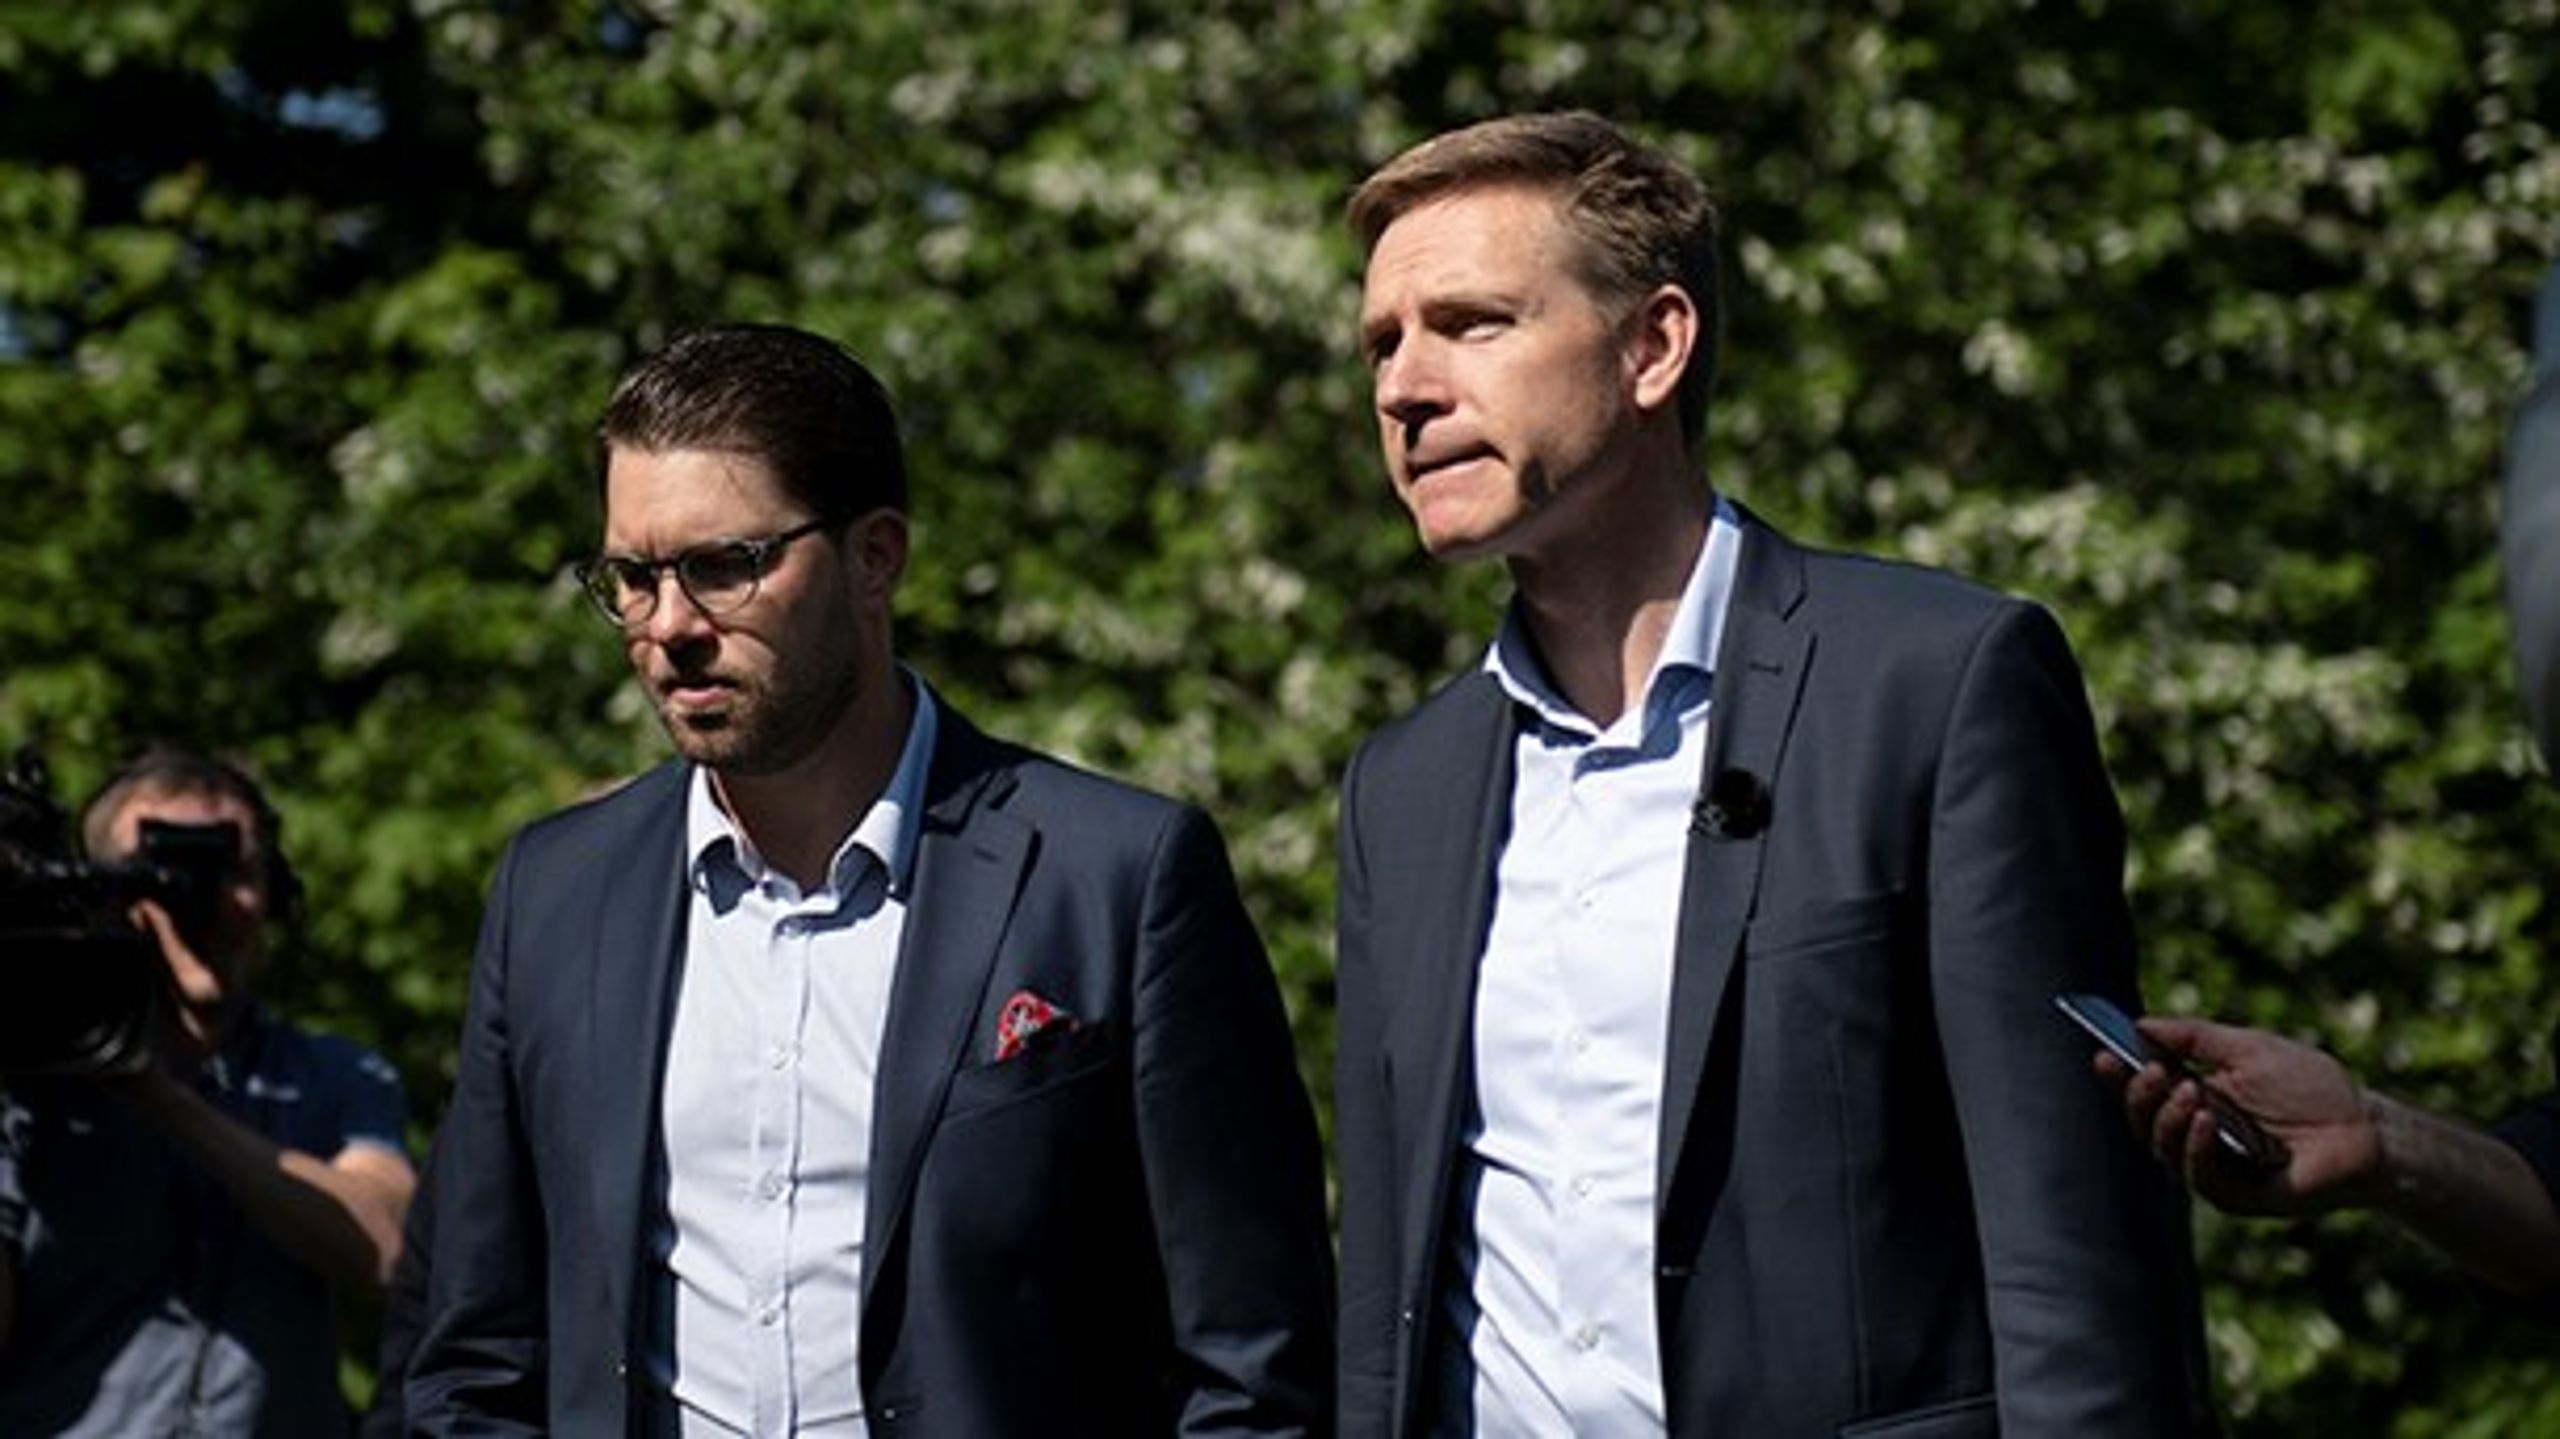 DF-formand Kristian Thulesen Dahl tog i maj måned et smut til Malmøs Rosengård med Sverigedemokraternes Jimmie Åkesson. Nu sidder de to partier også sammen i EU-Parlamentet